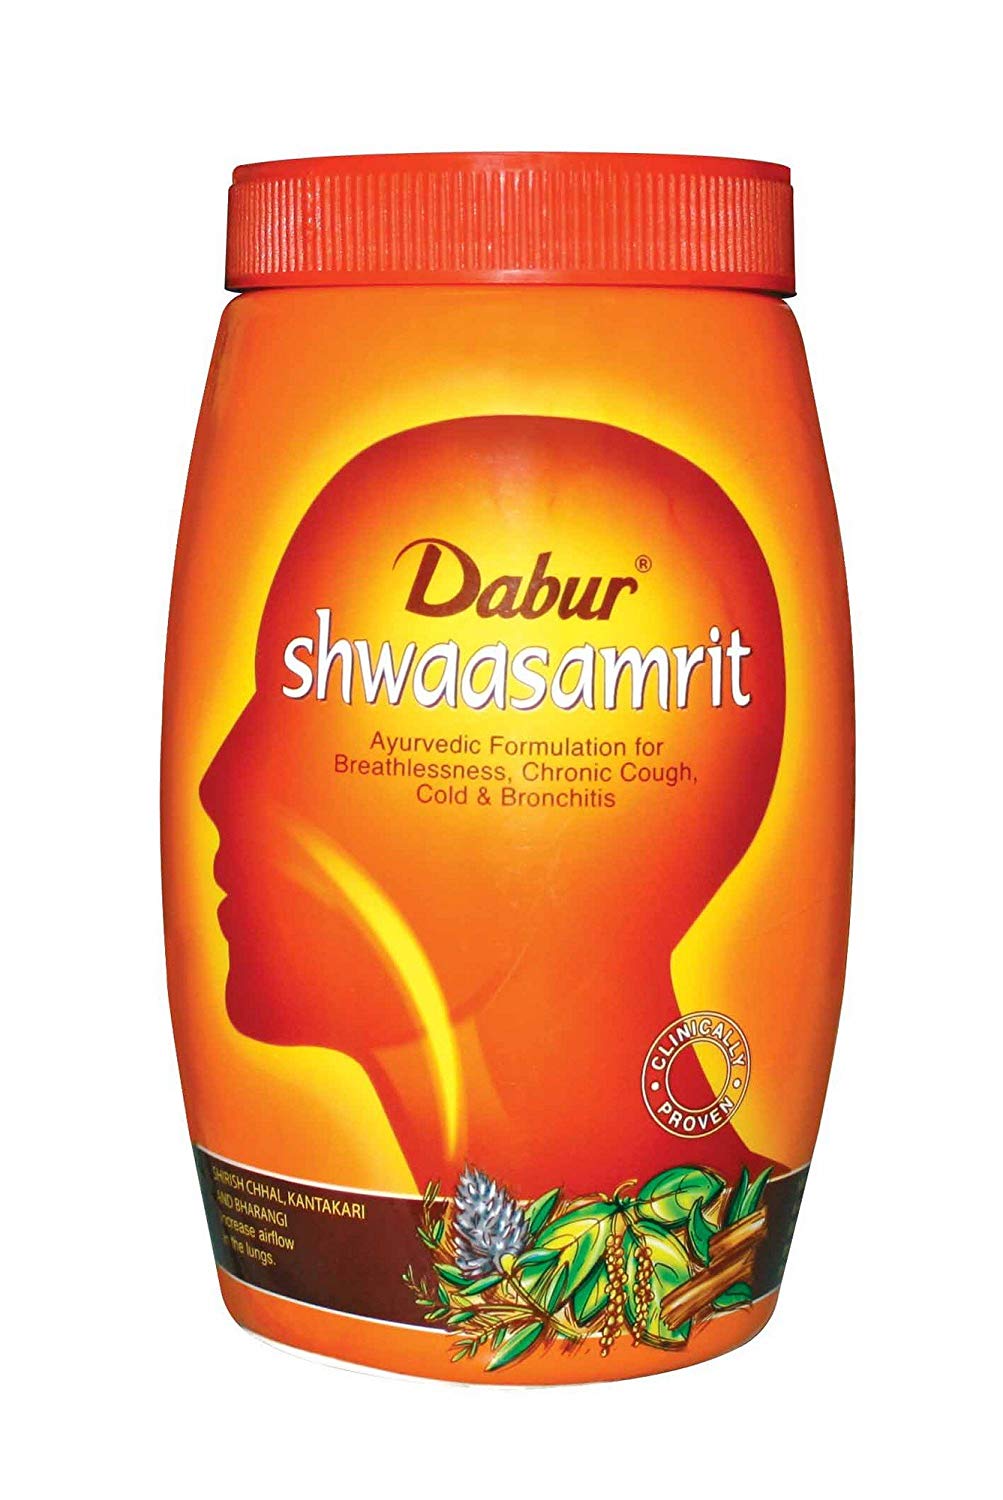 Dabur Shwaasamrit 100g -  Dabur - Medizzo.com